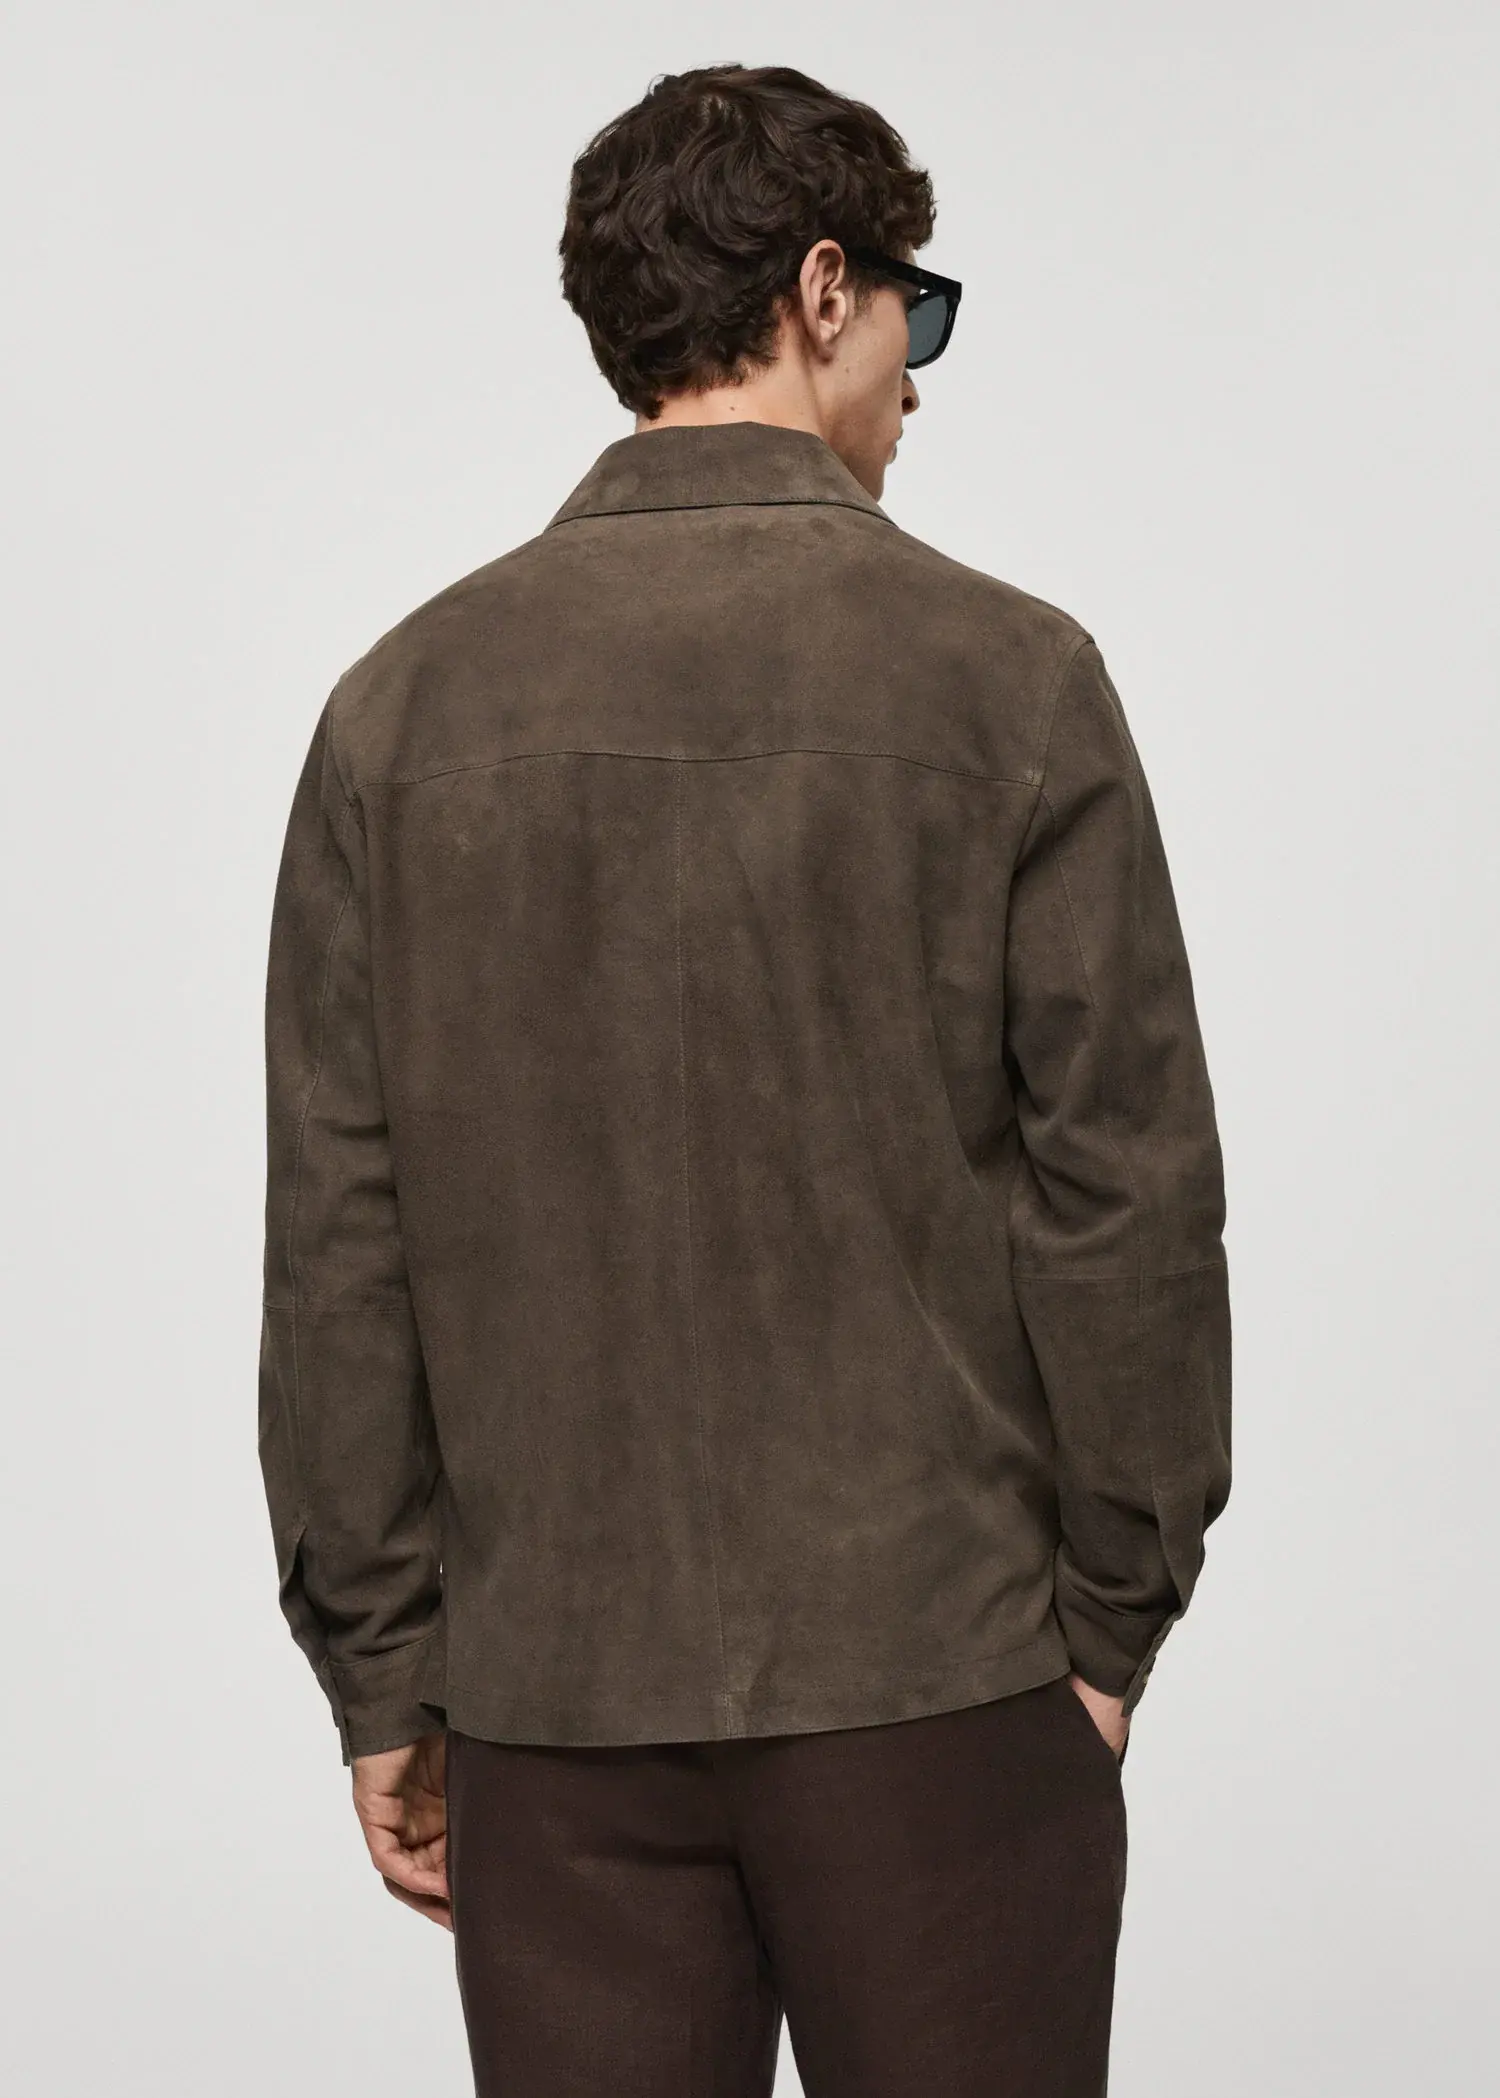 Mango Pocket leather jacket. 3